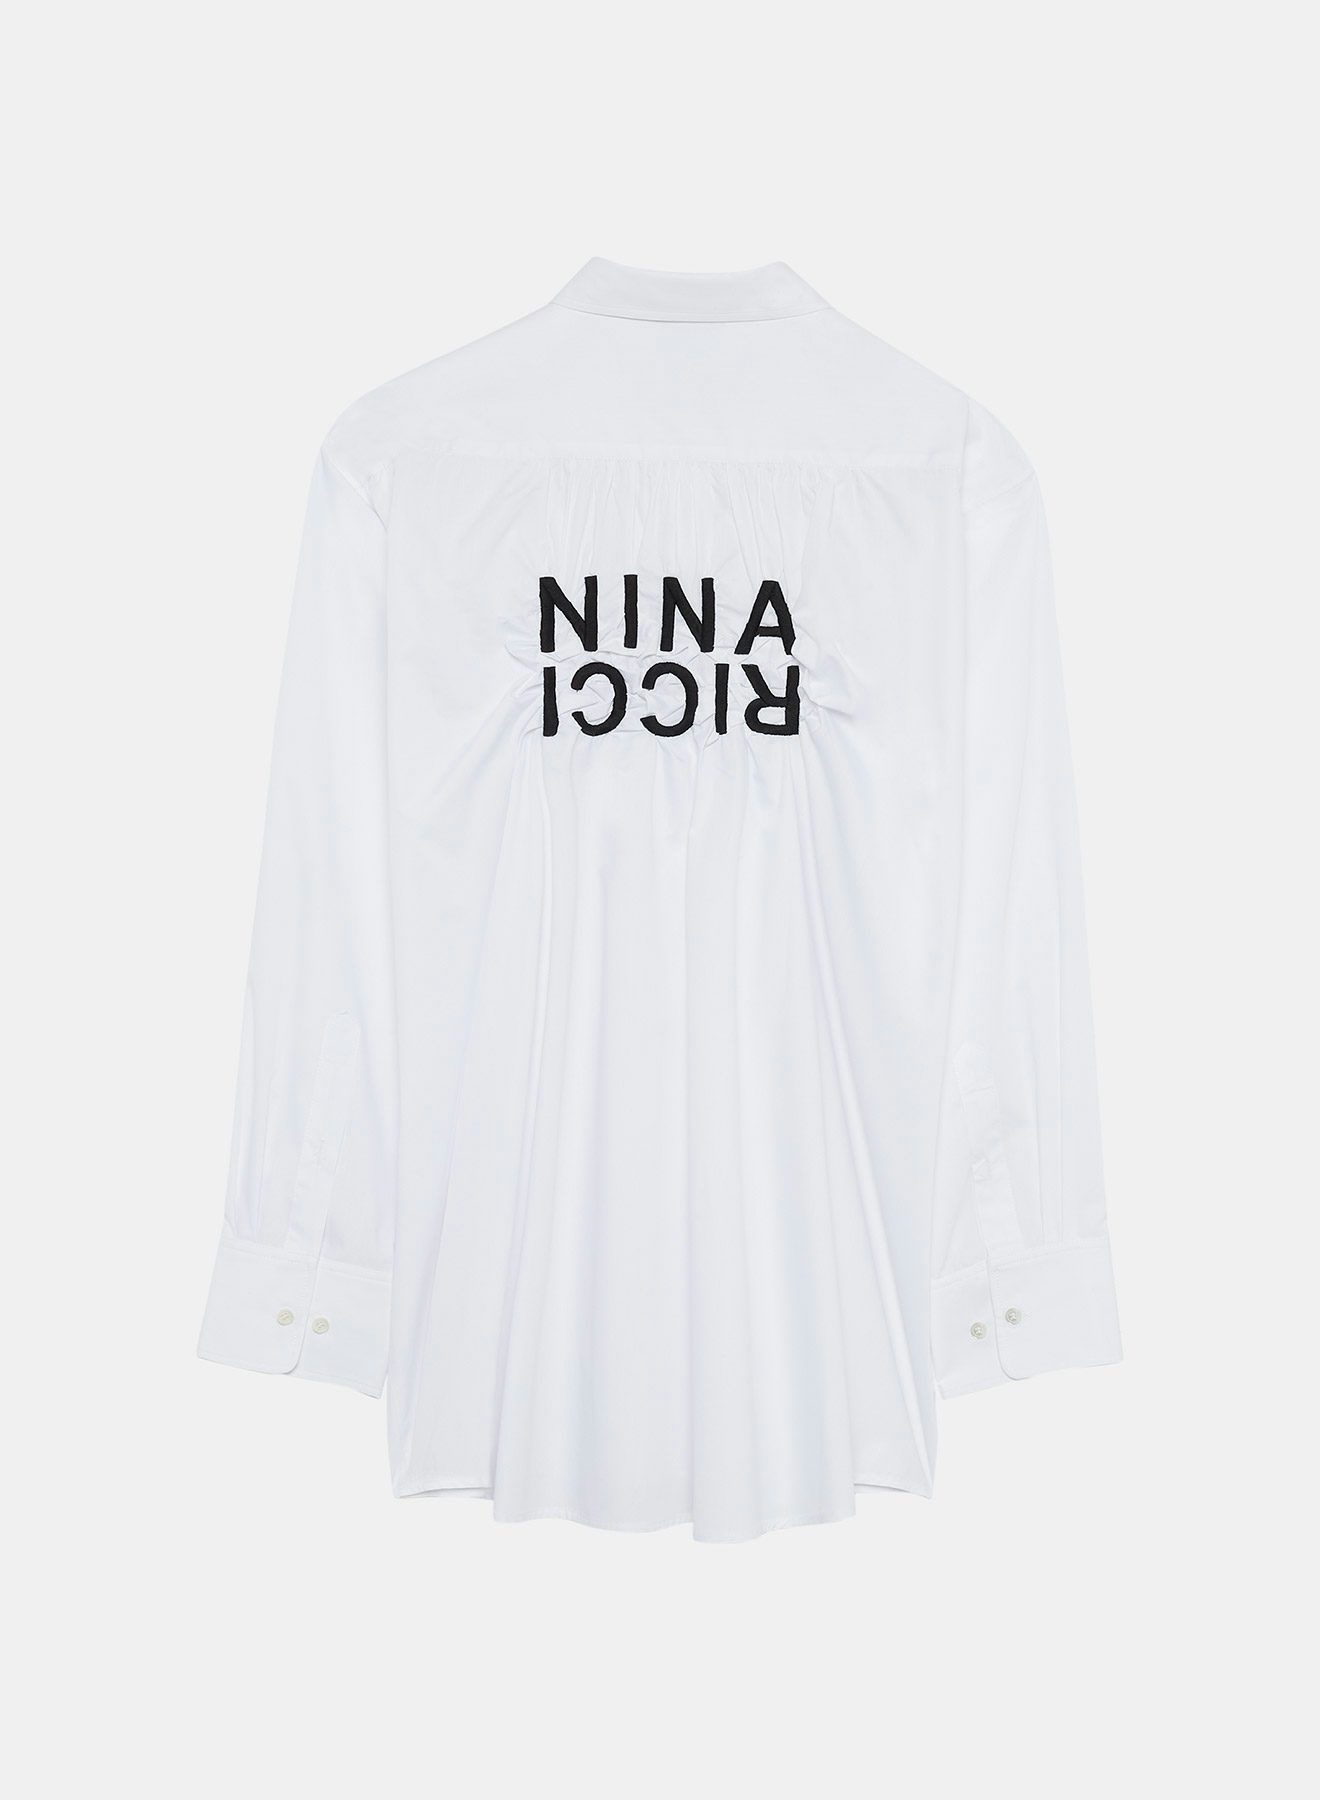 Camisa efecto arrugado blanca y negra con bordado contrastado Nina Ricci en la espalda - Nina Ricci